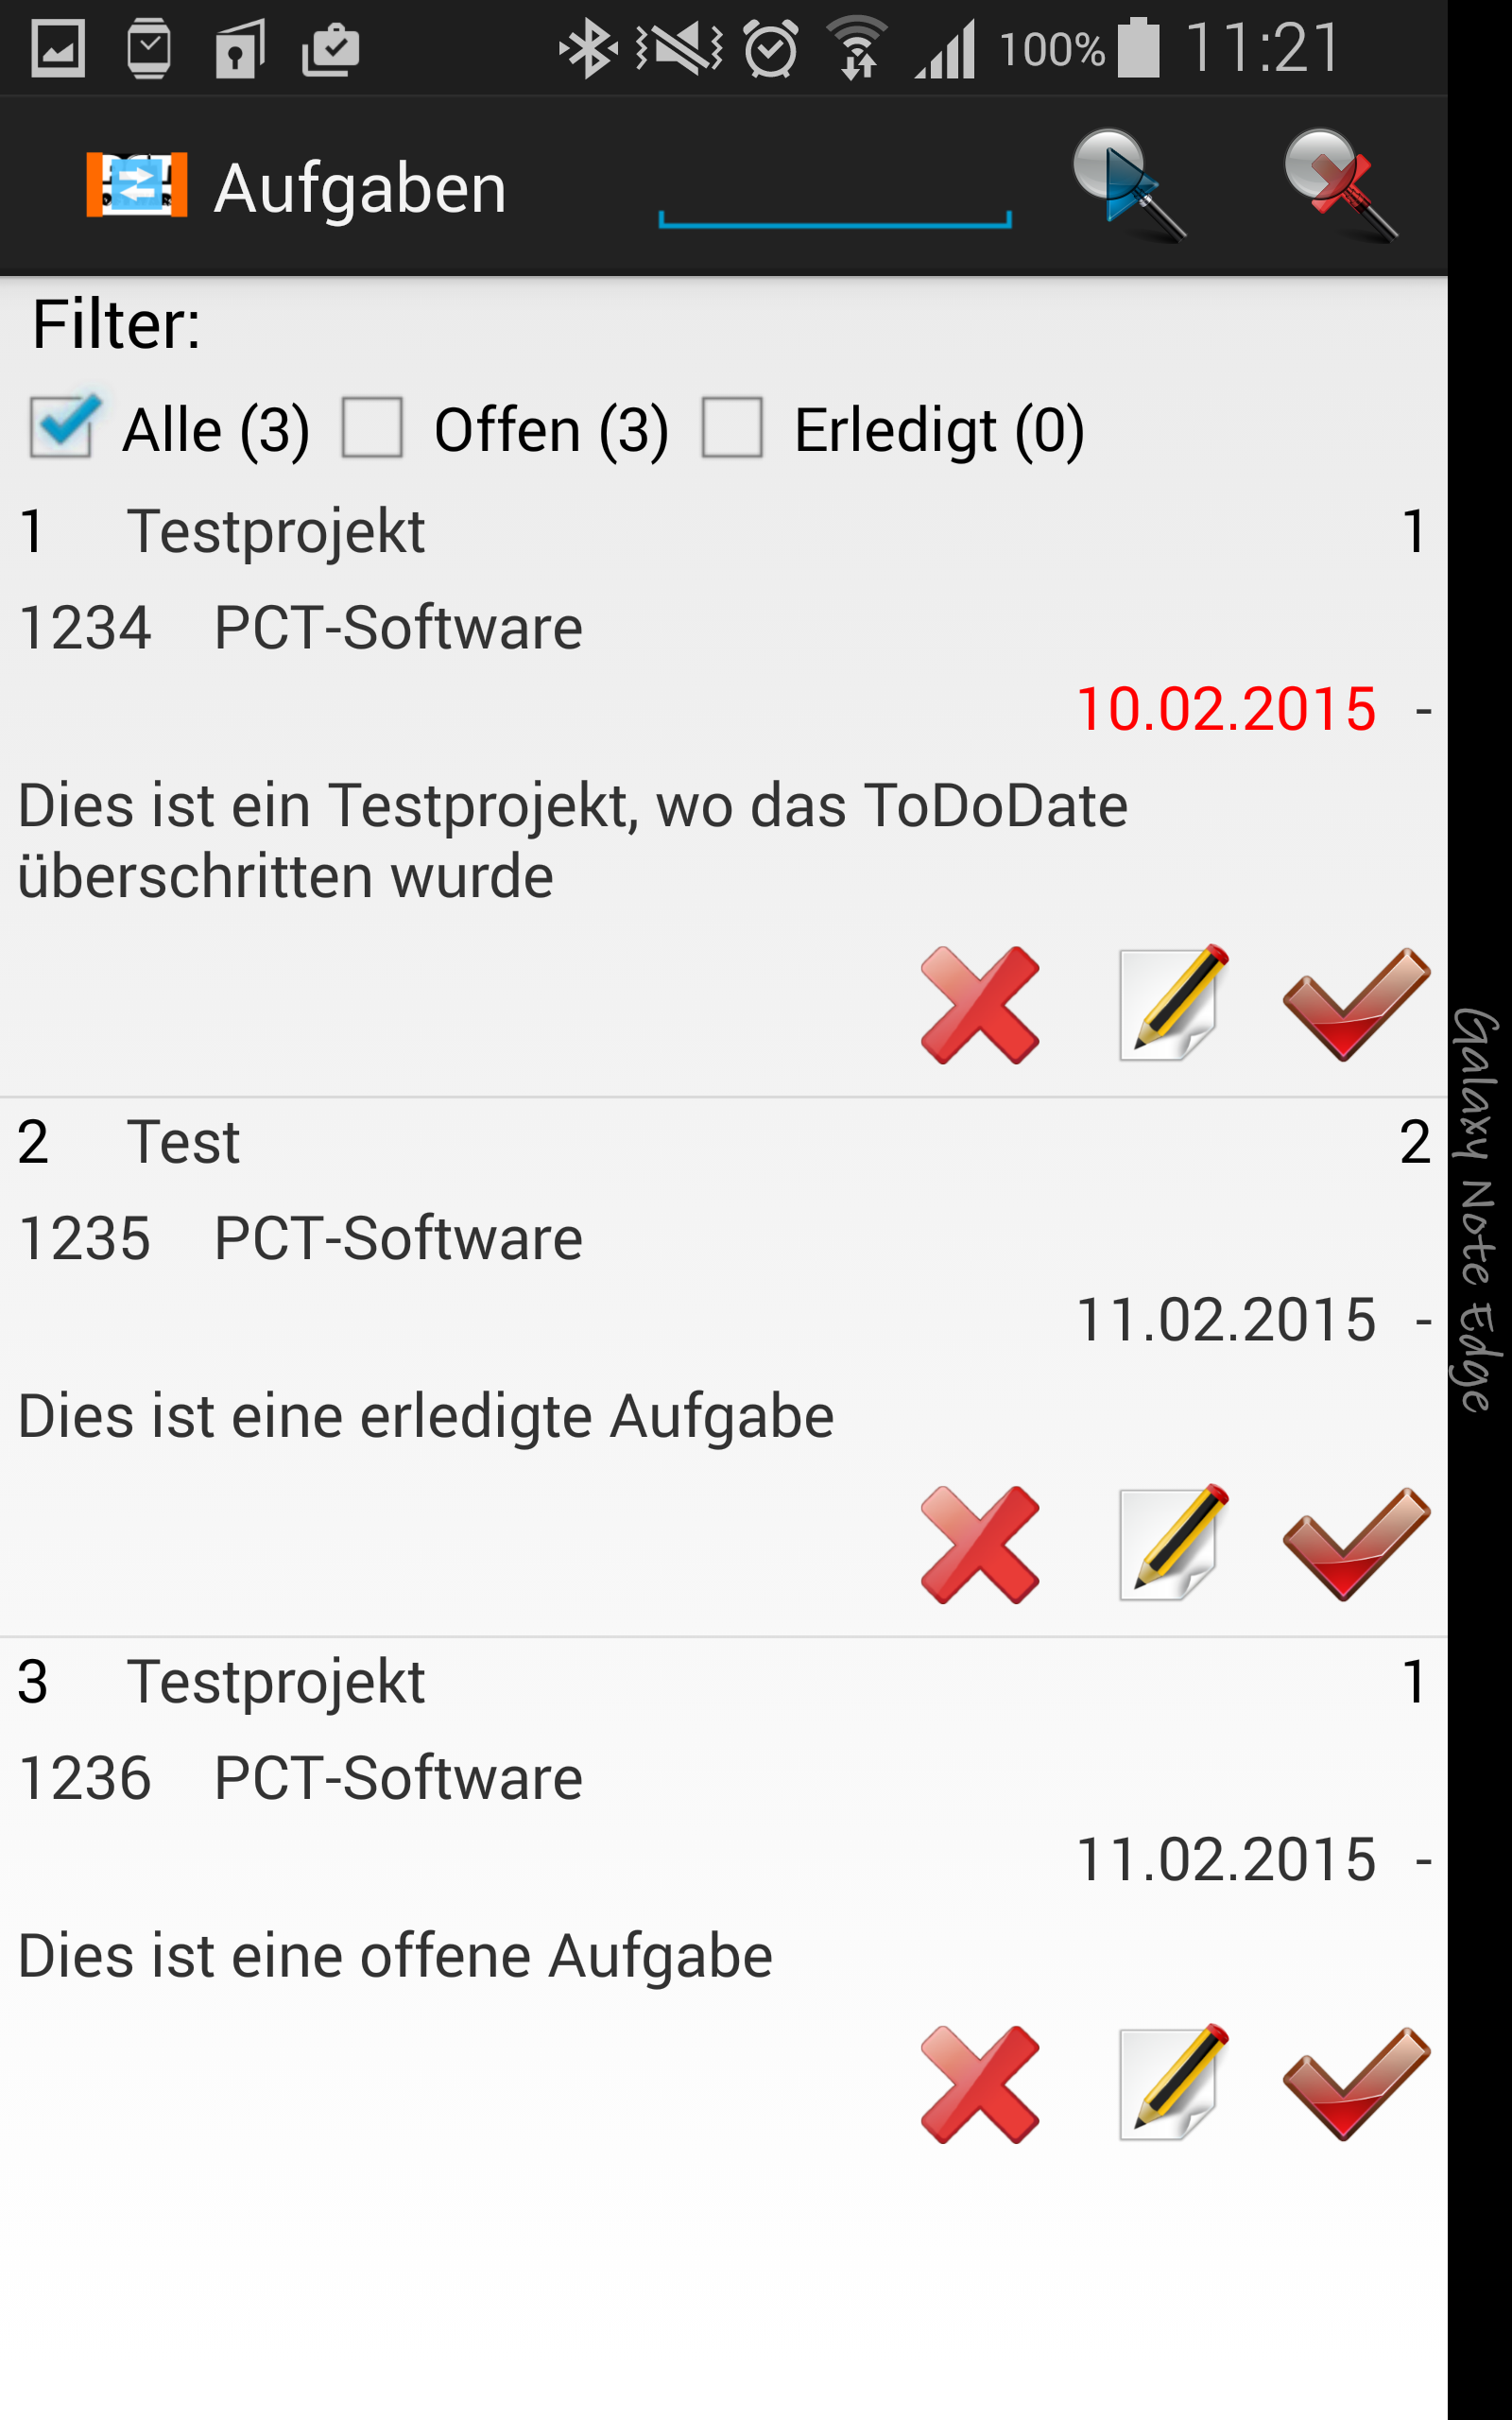 PCT-TDL - Client | Aufgaben anlegen und verwalten - Android App - Screenshot 10.